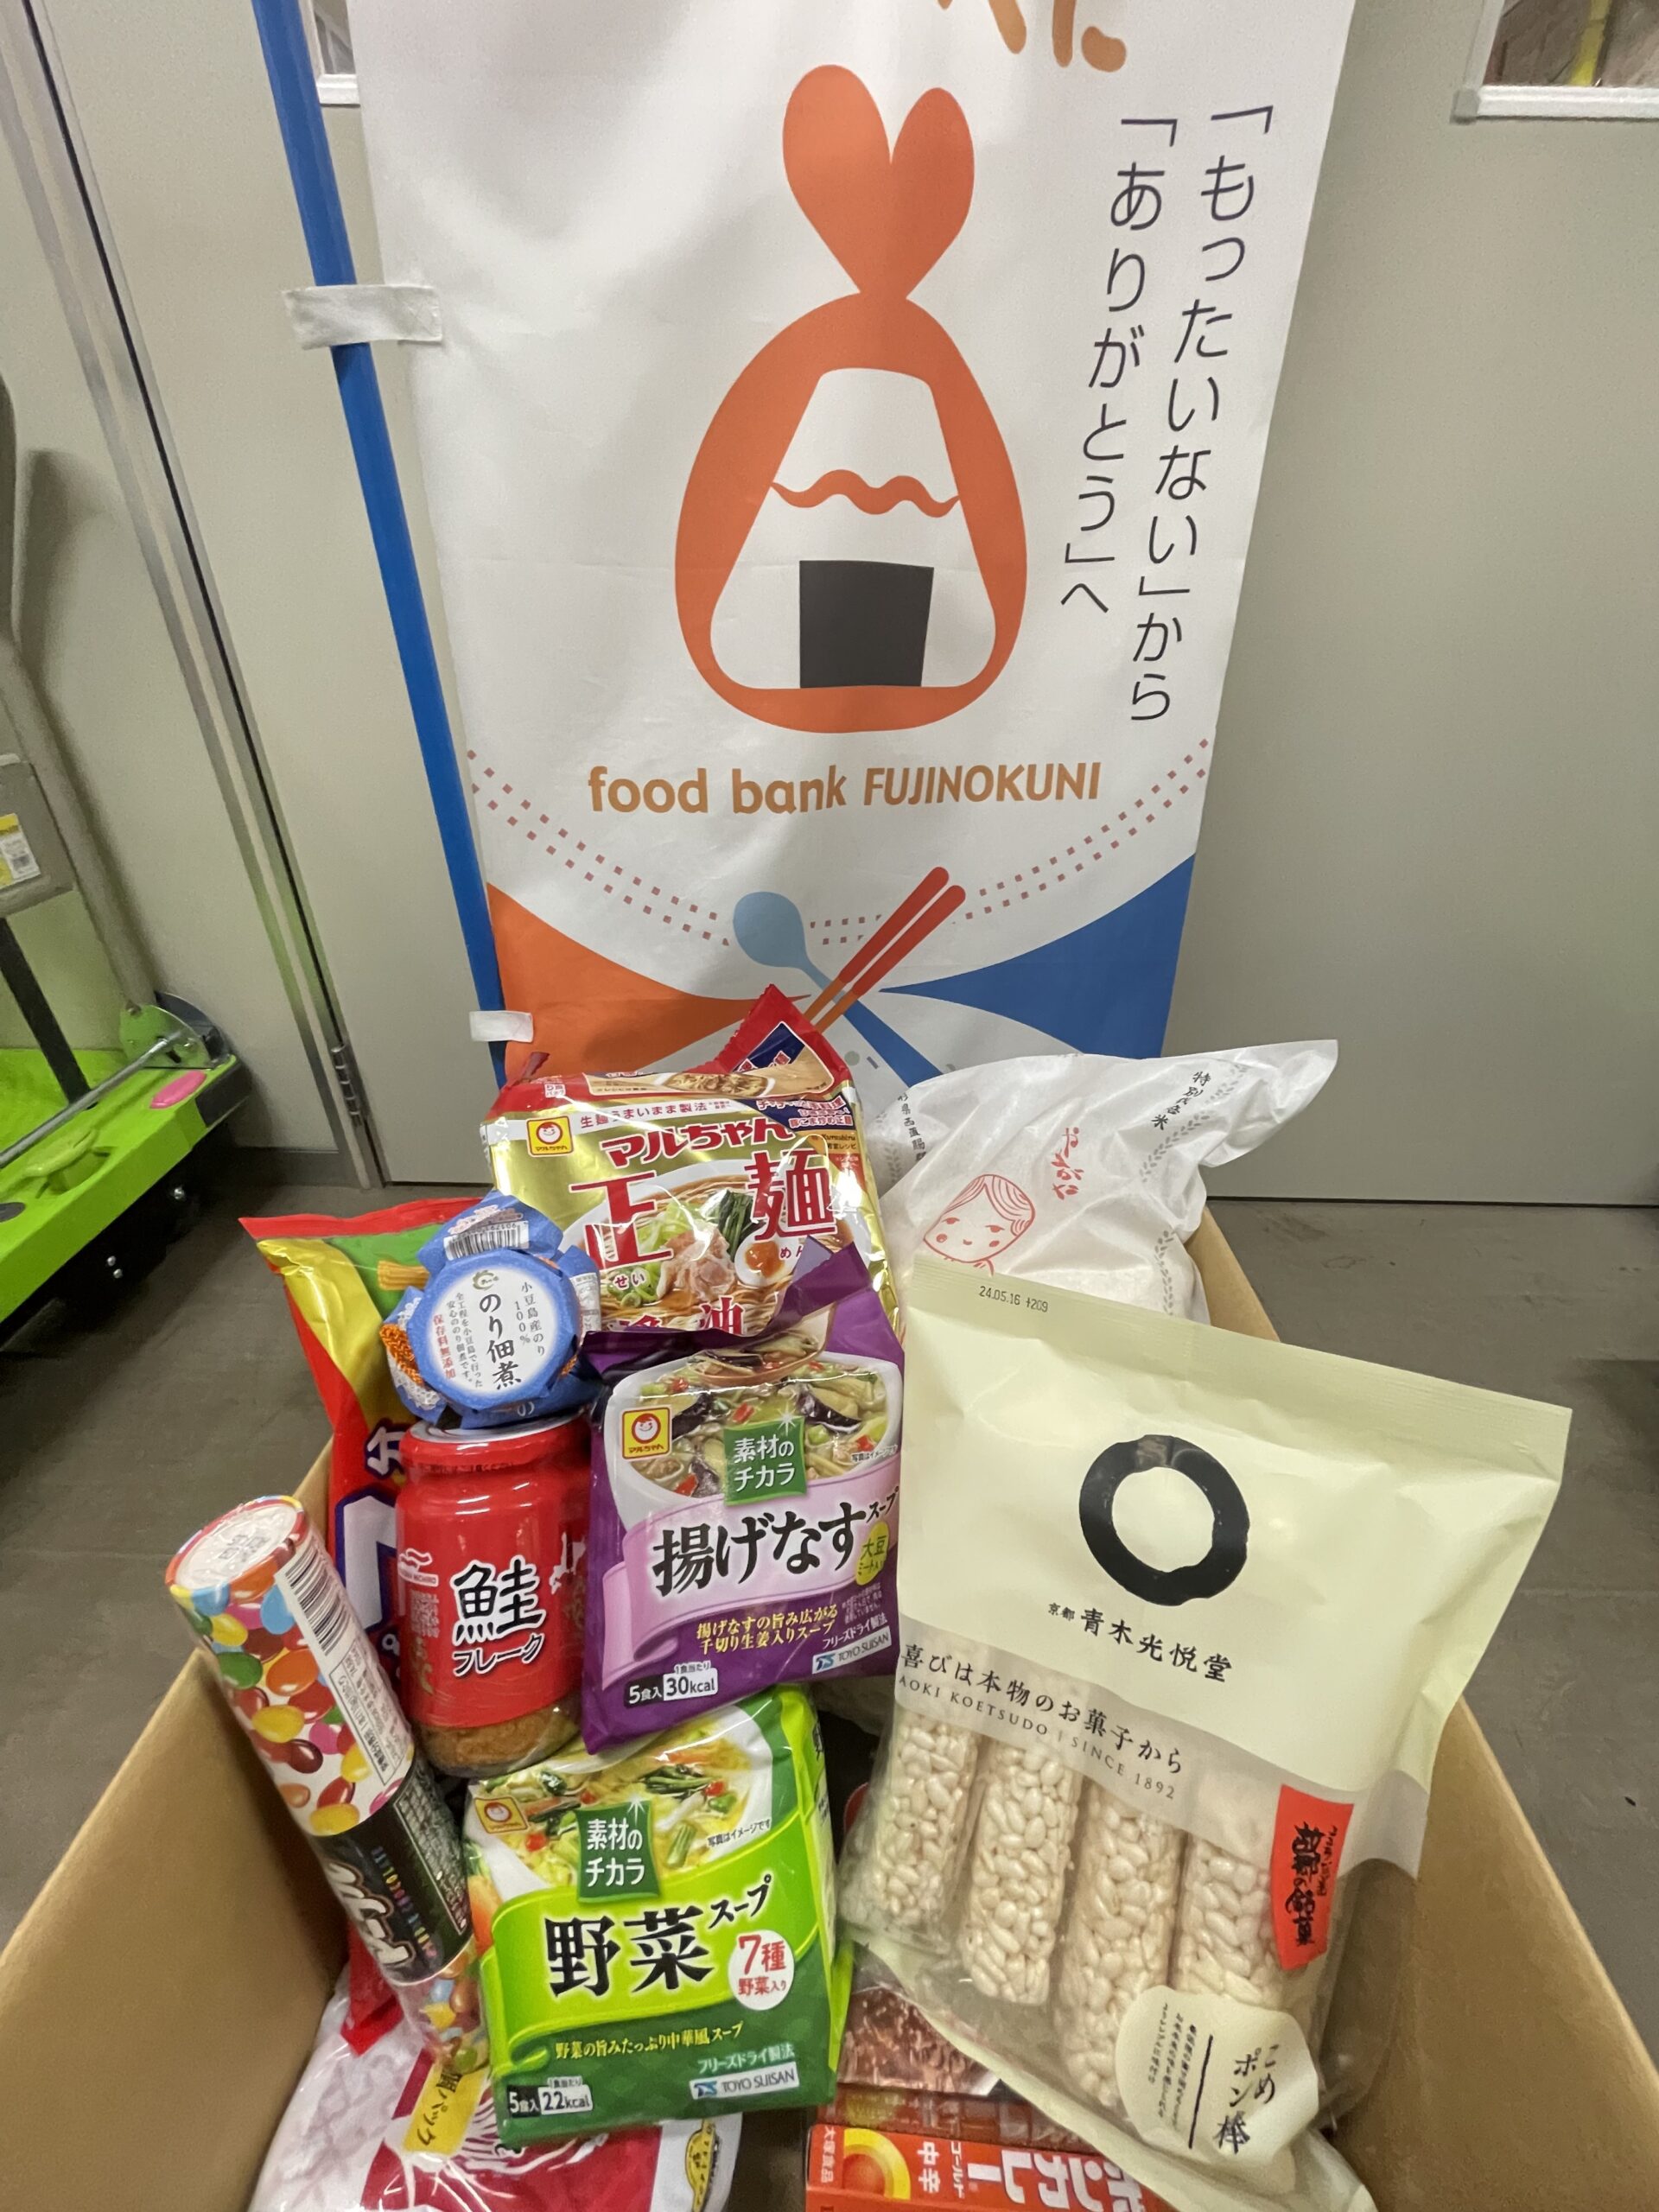 静岡商業高等学校様より食品を寄贈していただきました。